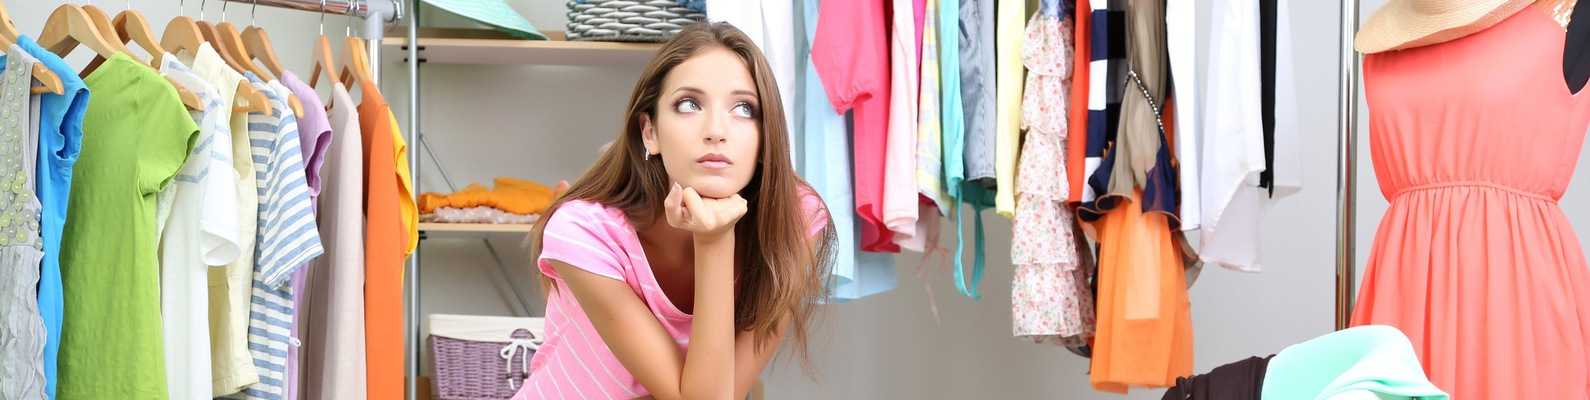 5 вопросов, которые помогут избавиться от желания скупить весь магазин